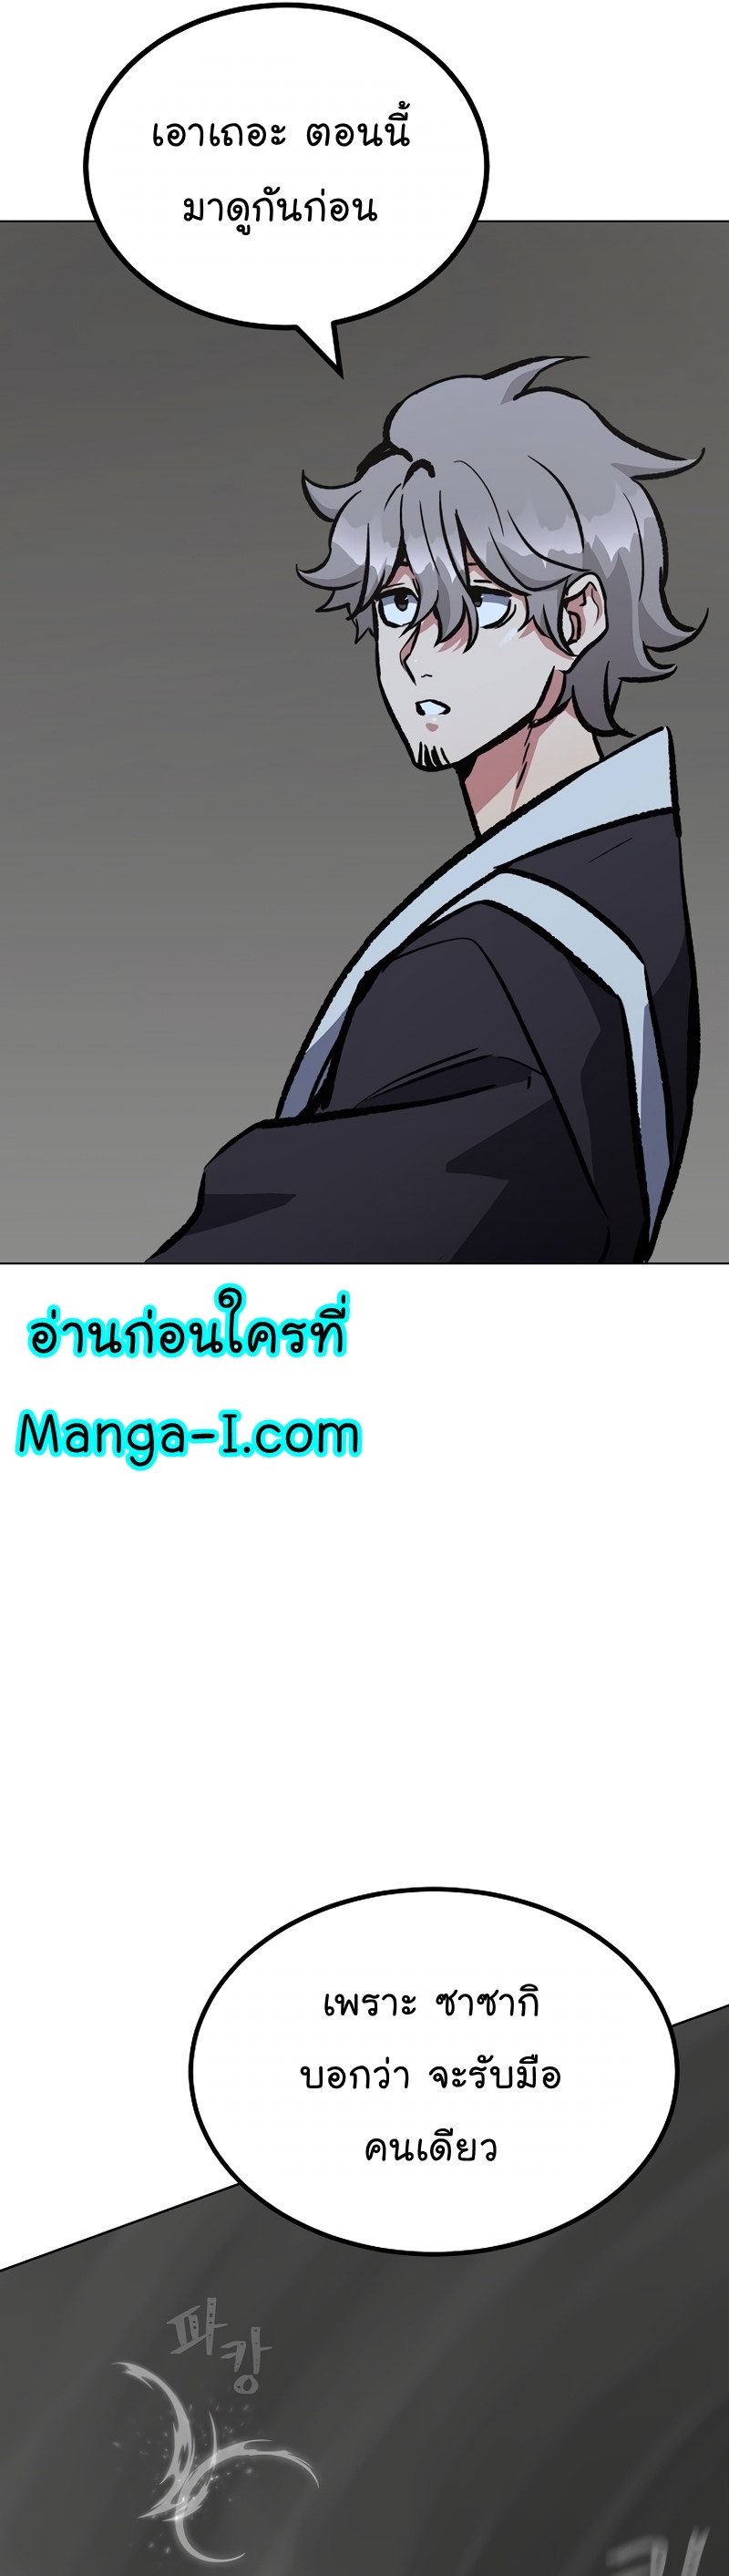 Manga Manhwa Level 1 Player 66 (46)